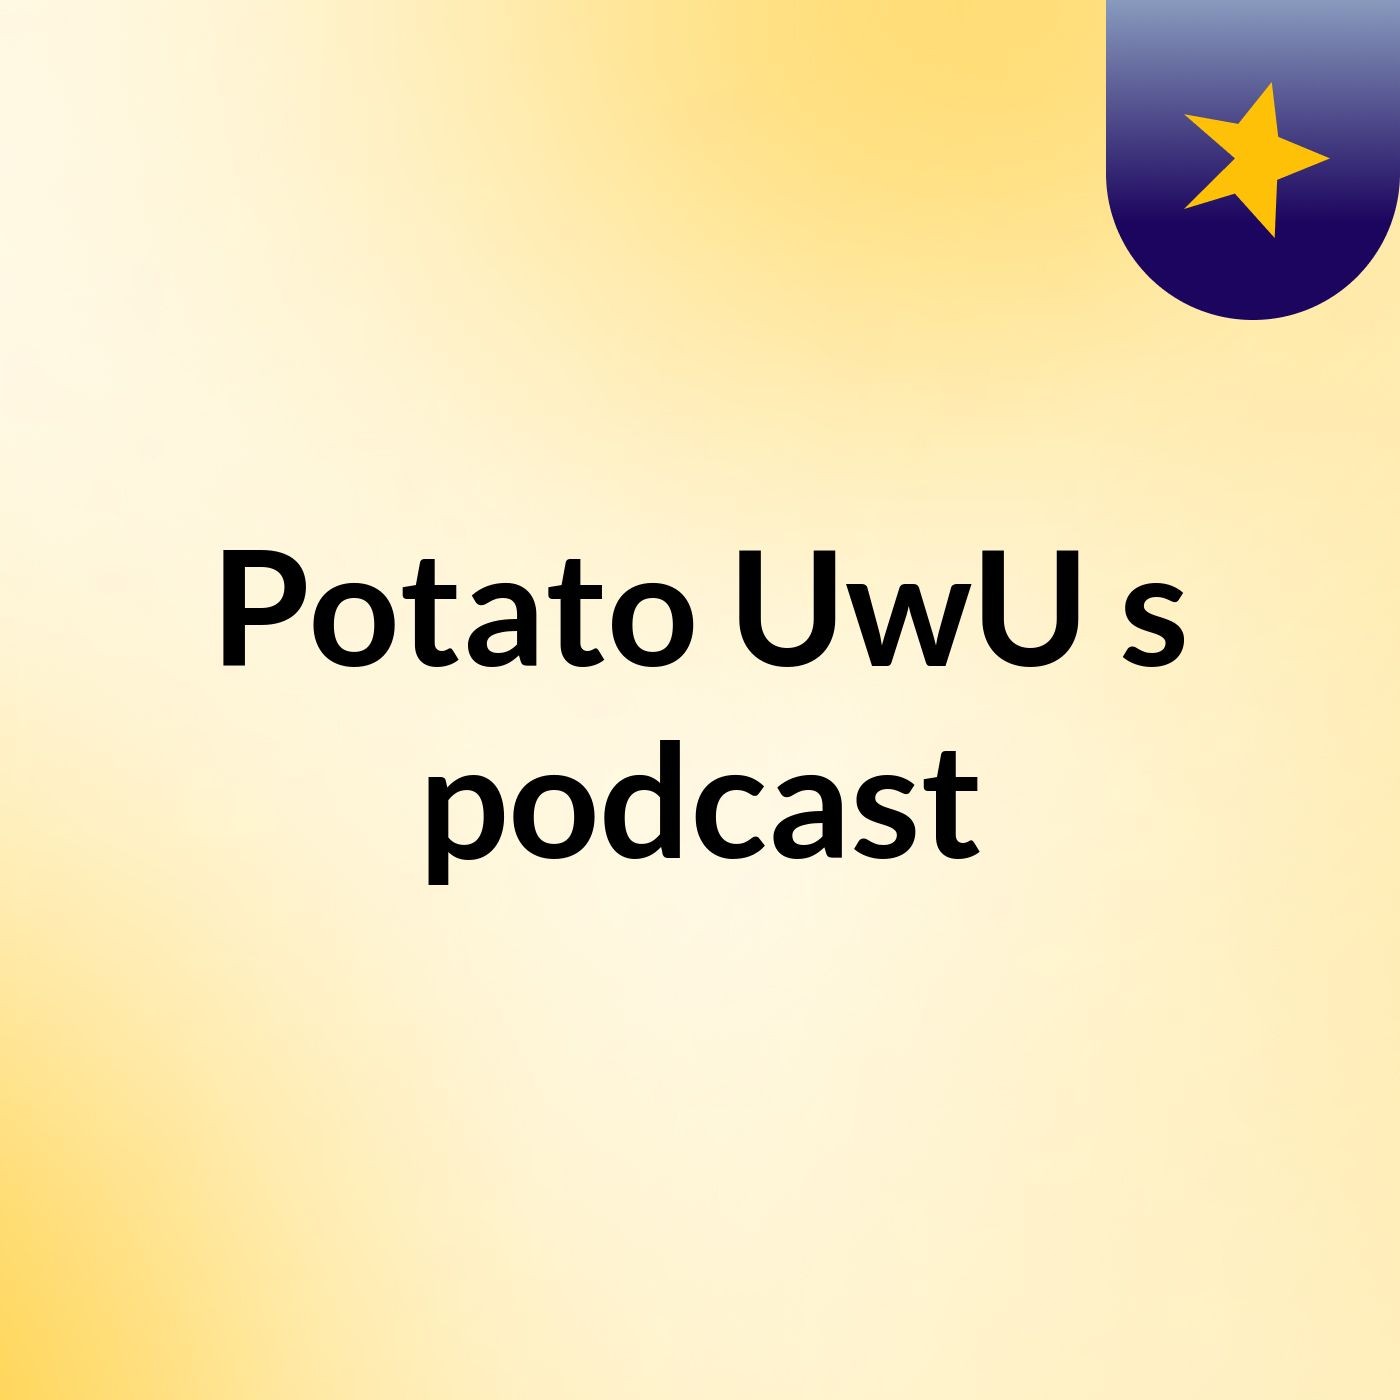 Potato UwU's podcast